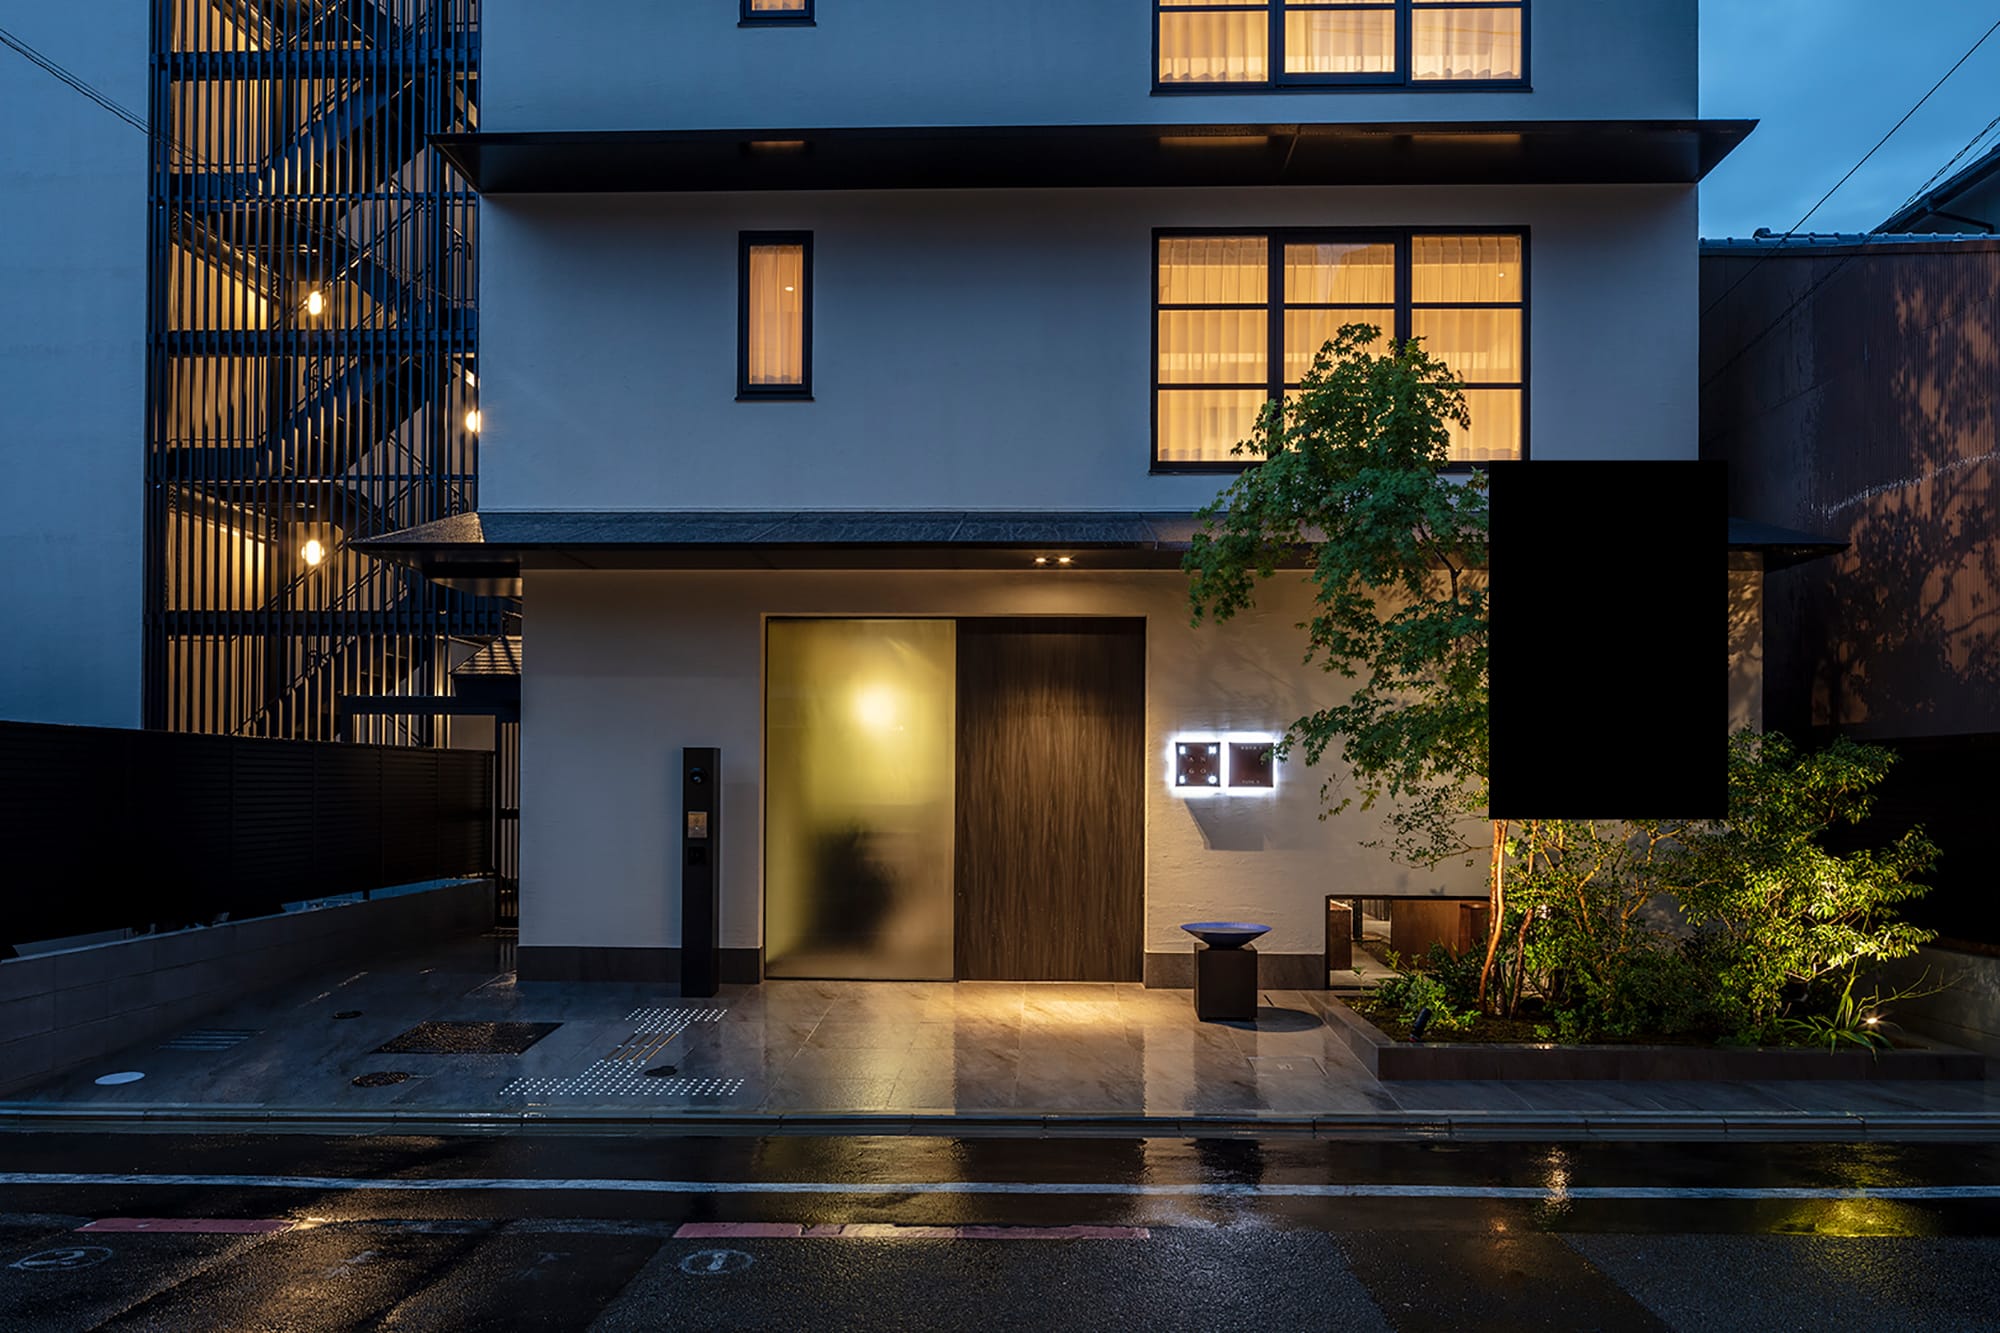 「ザジェネラルキョウト　高辻麩屋町（Enso Ango FUYAⅡ 麩屋町通Ⅱ）」（日本・京都）は2018年に開業した日本初の分散型ホテル。京都市内でも人気のエリア四条通と五条通、鴨川の東側の5カ所に５つの特徴あるホテルが分散して立地する。棟によってデザインのコンセプトが異なり、5つを周遊しながら愉しめる